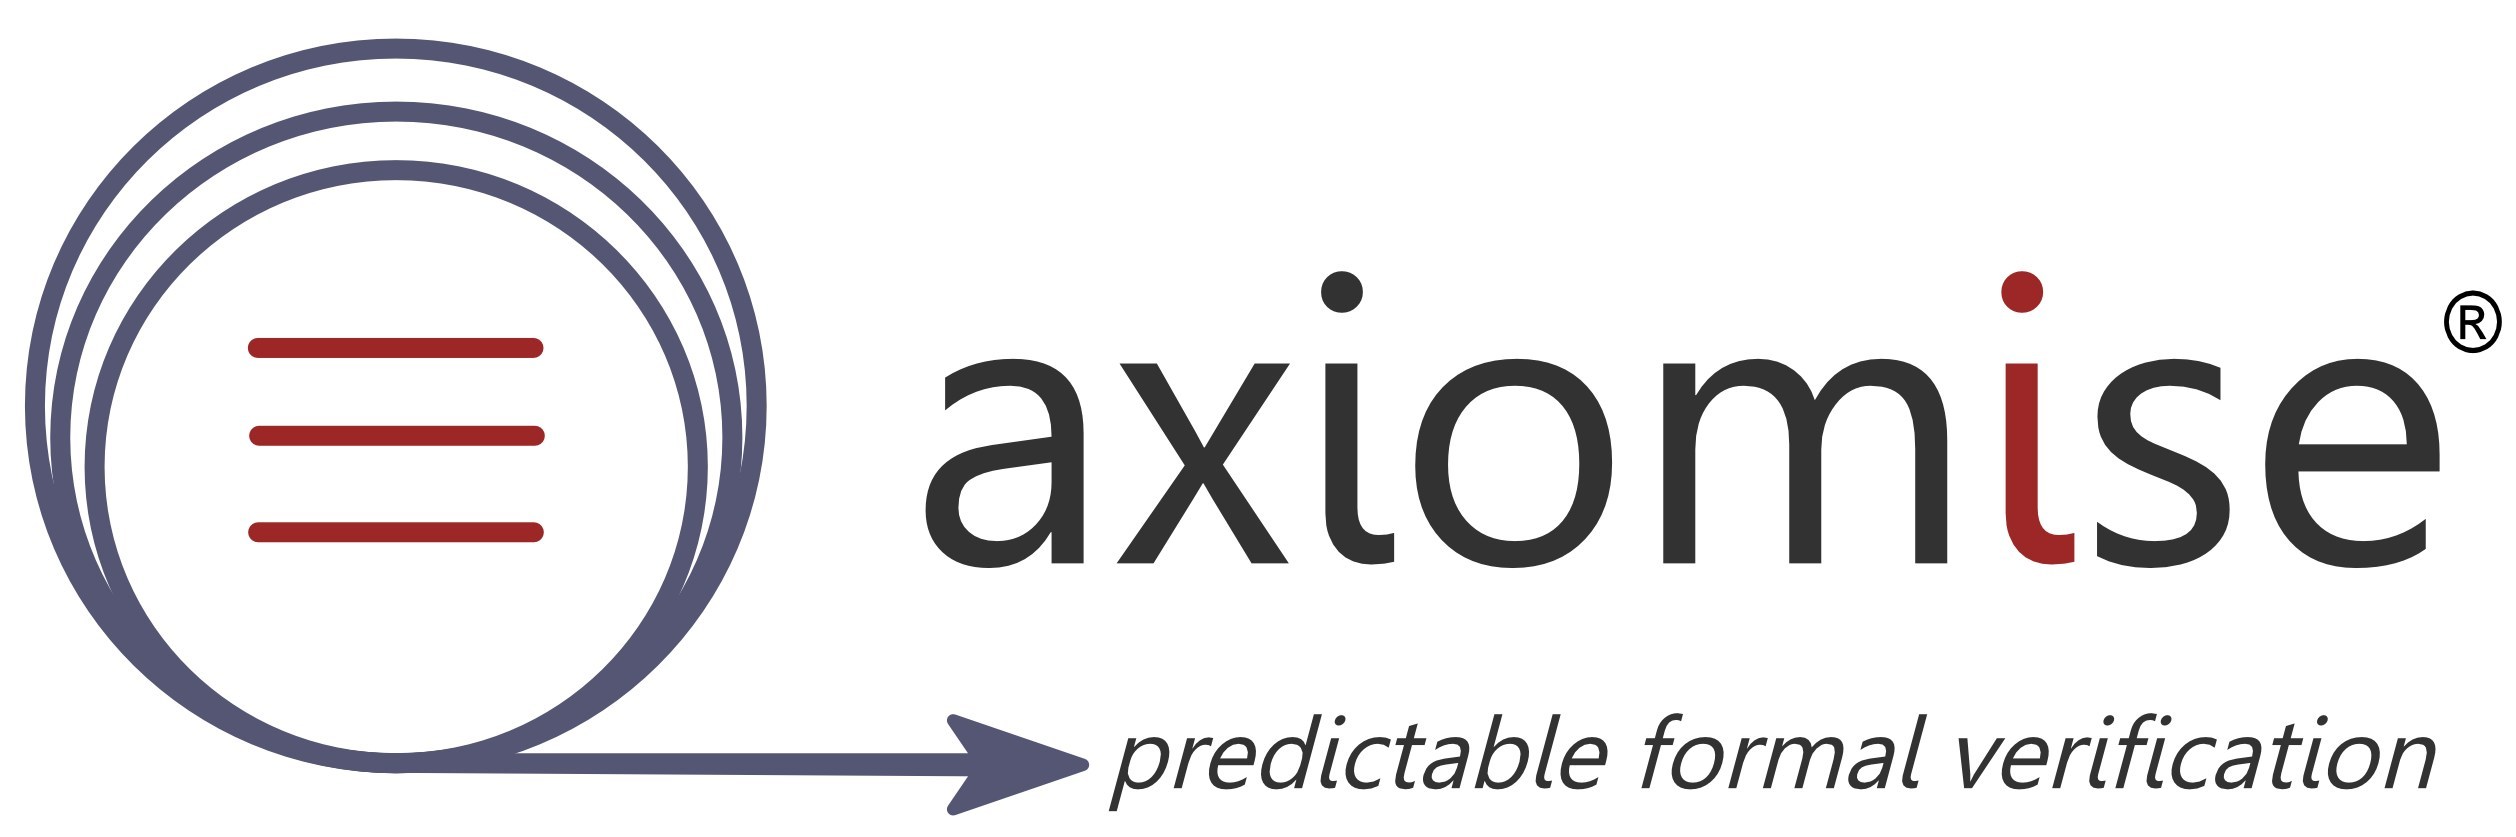 Axiomise_Logo.jpg